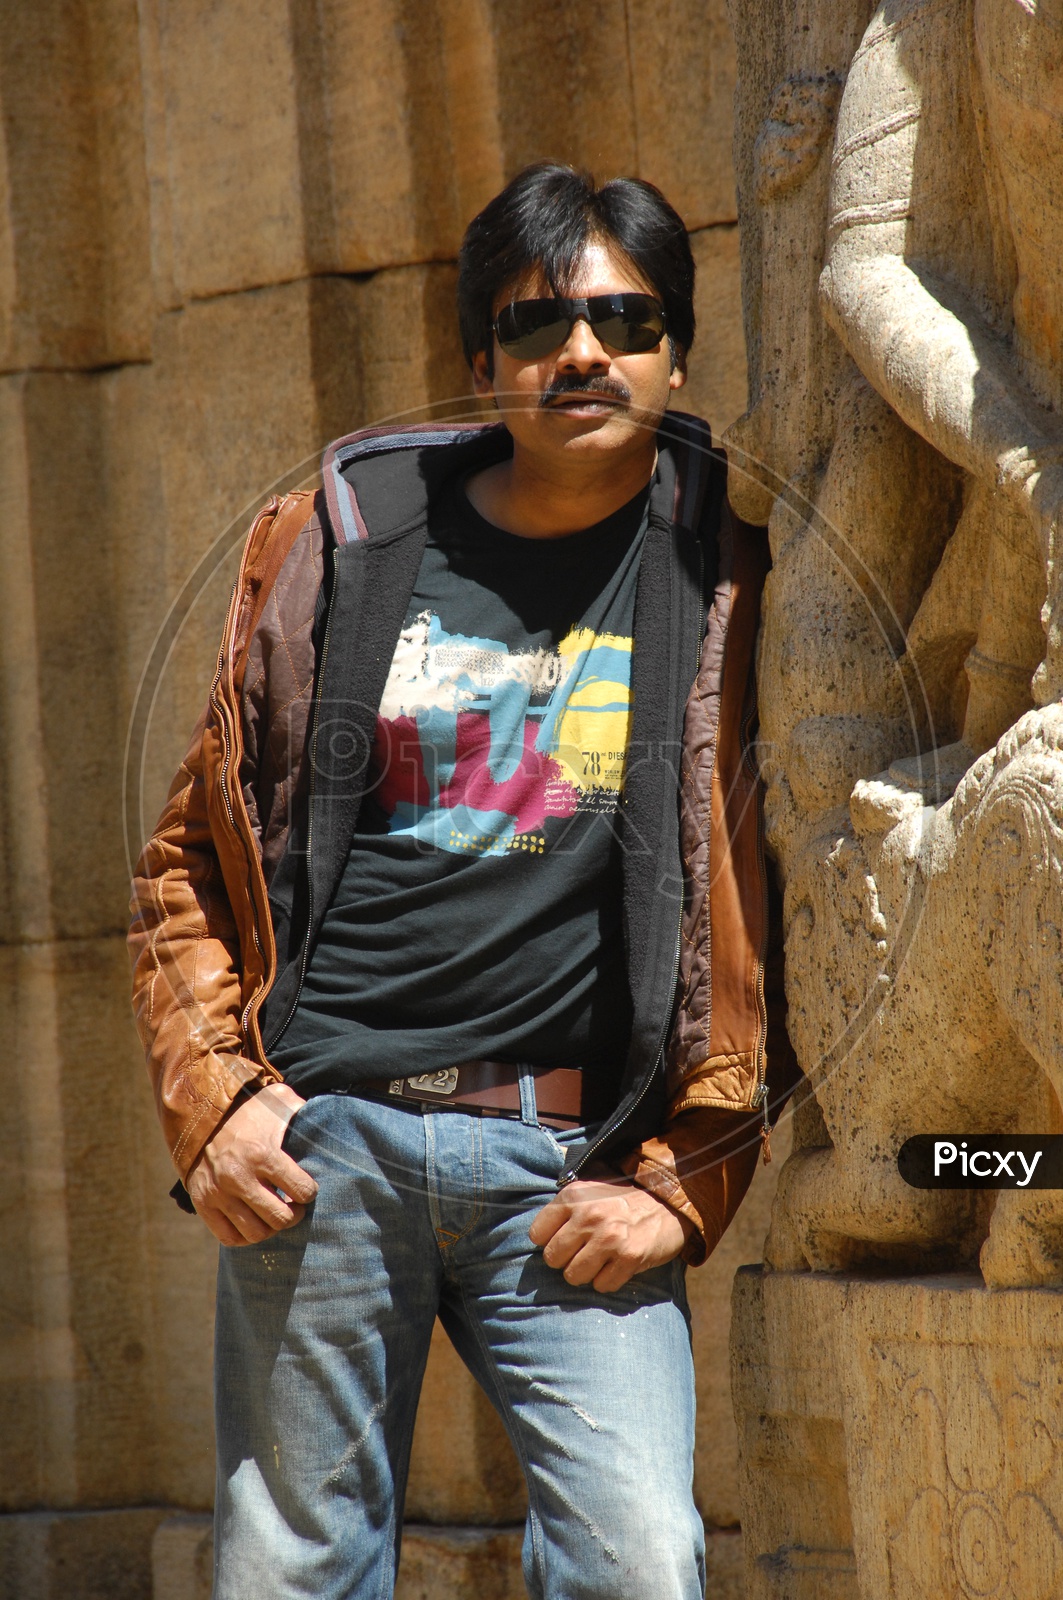 Actor Pawan Kalyan Stills / Photos of Actor Pawan Kalyan